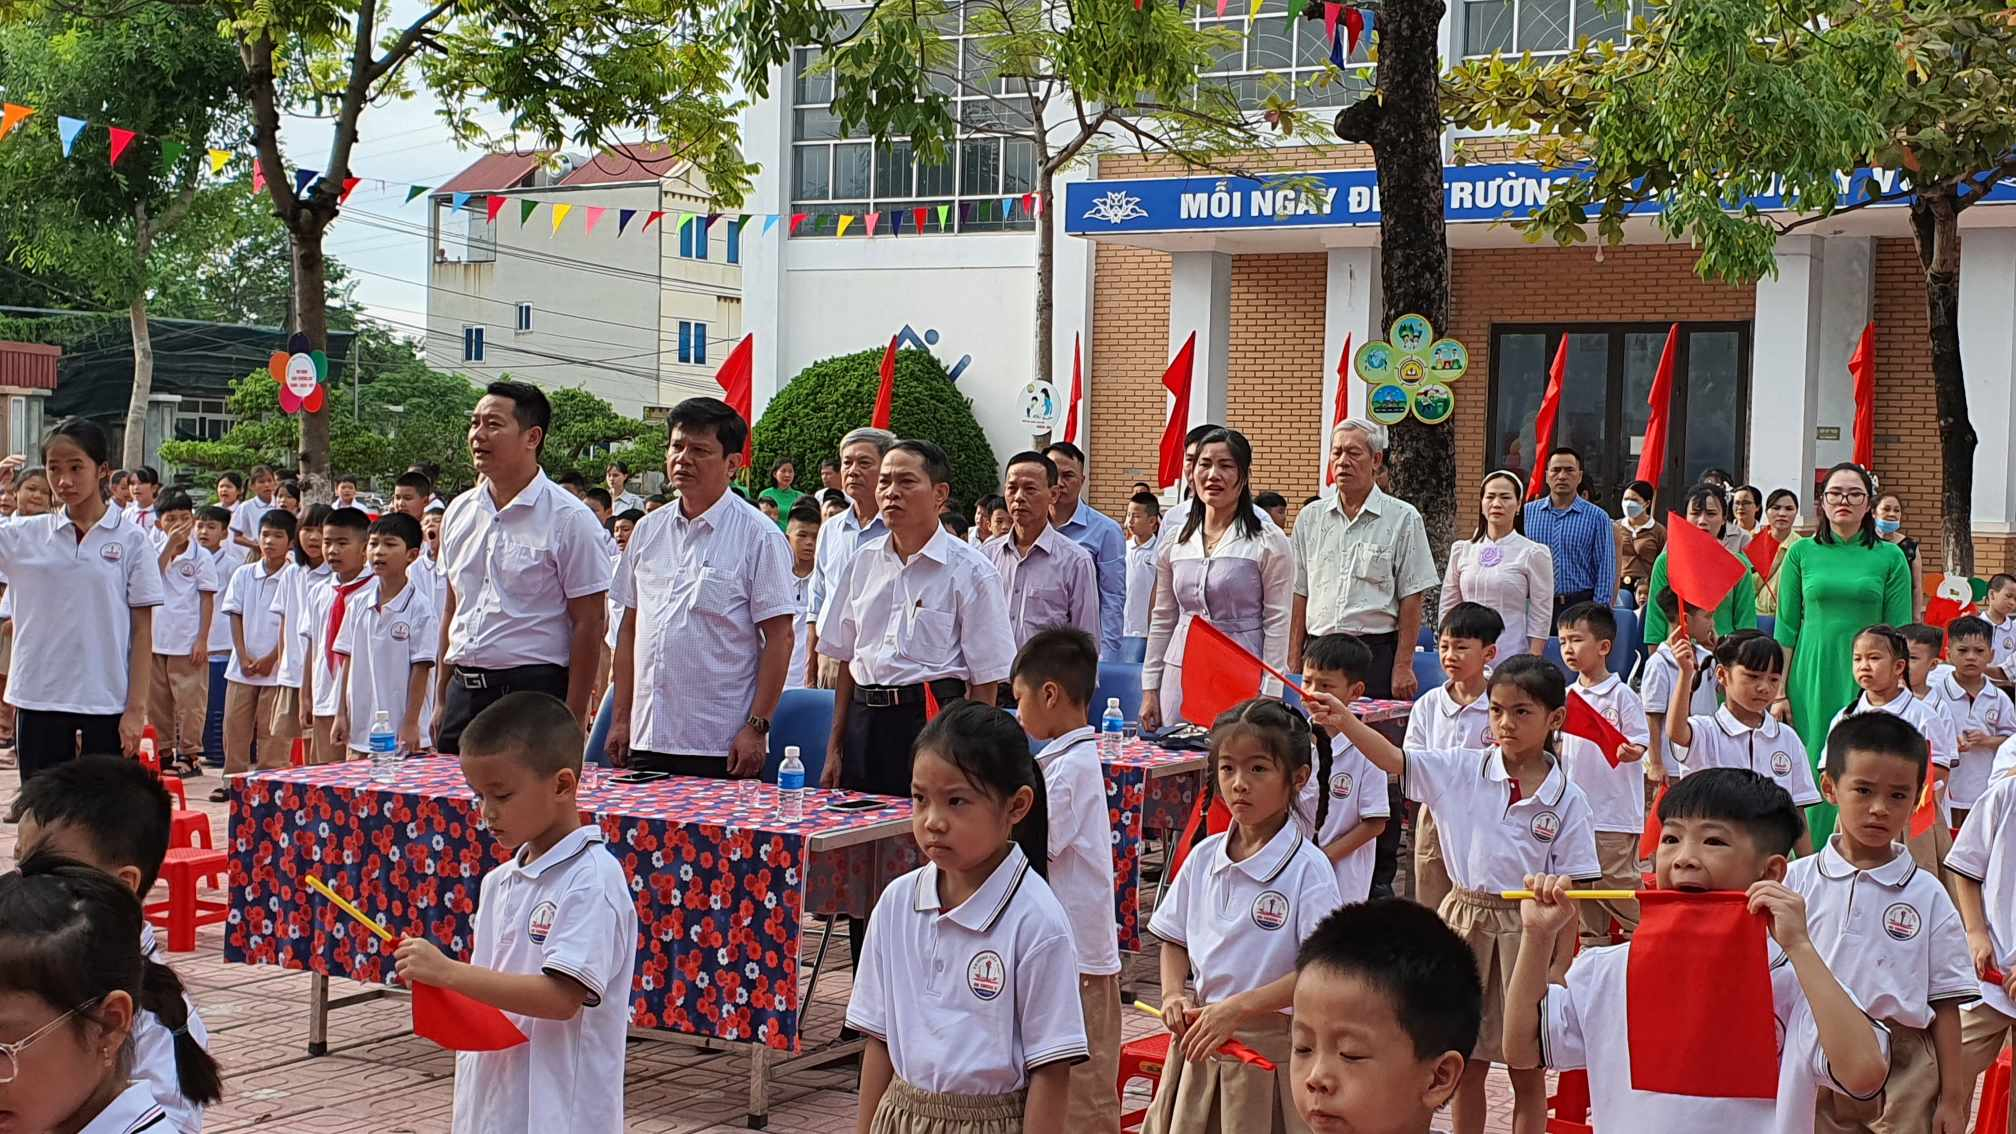 Đại diện huyện Hoài Đức, đại diện Đảng uỷ, UBND xã An Thượng tới dự lễ khai giảng ở trường tiểu học An Thượng B